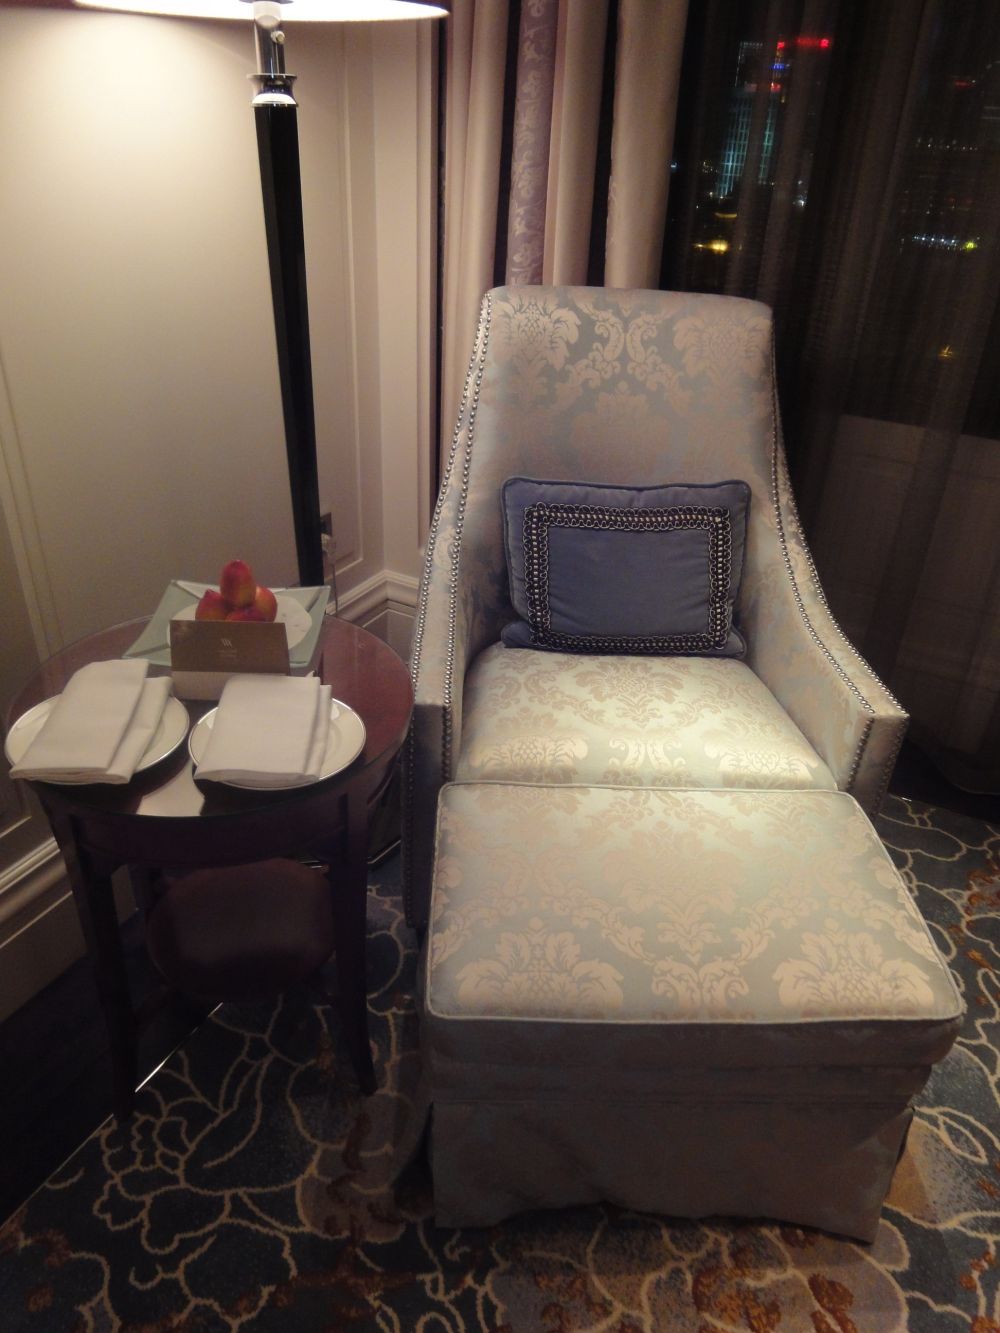 上海华尔道夫酒店(The Waldorf Astoria OnTheBund)(HBA)10.9第10页更新_DSC04332.jpg